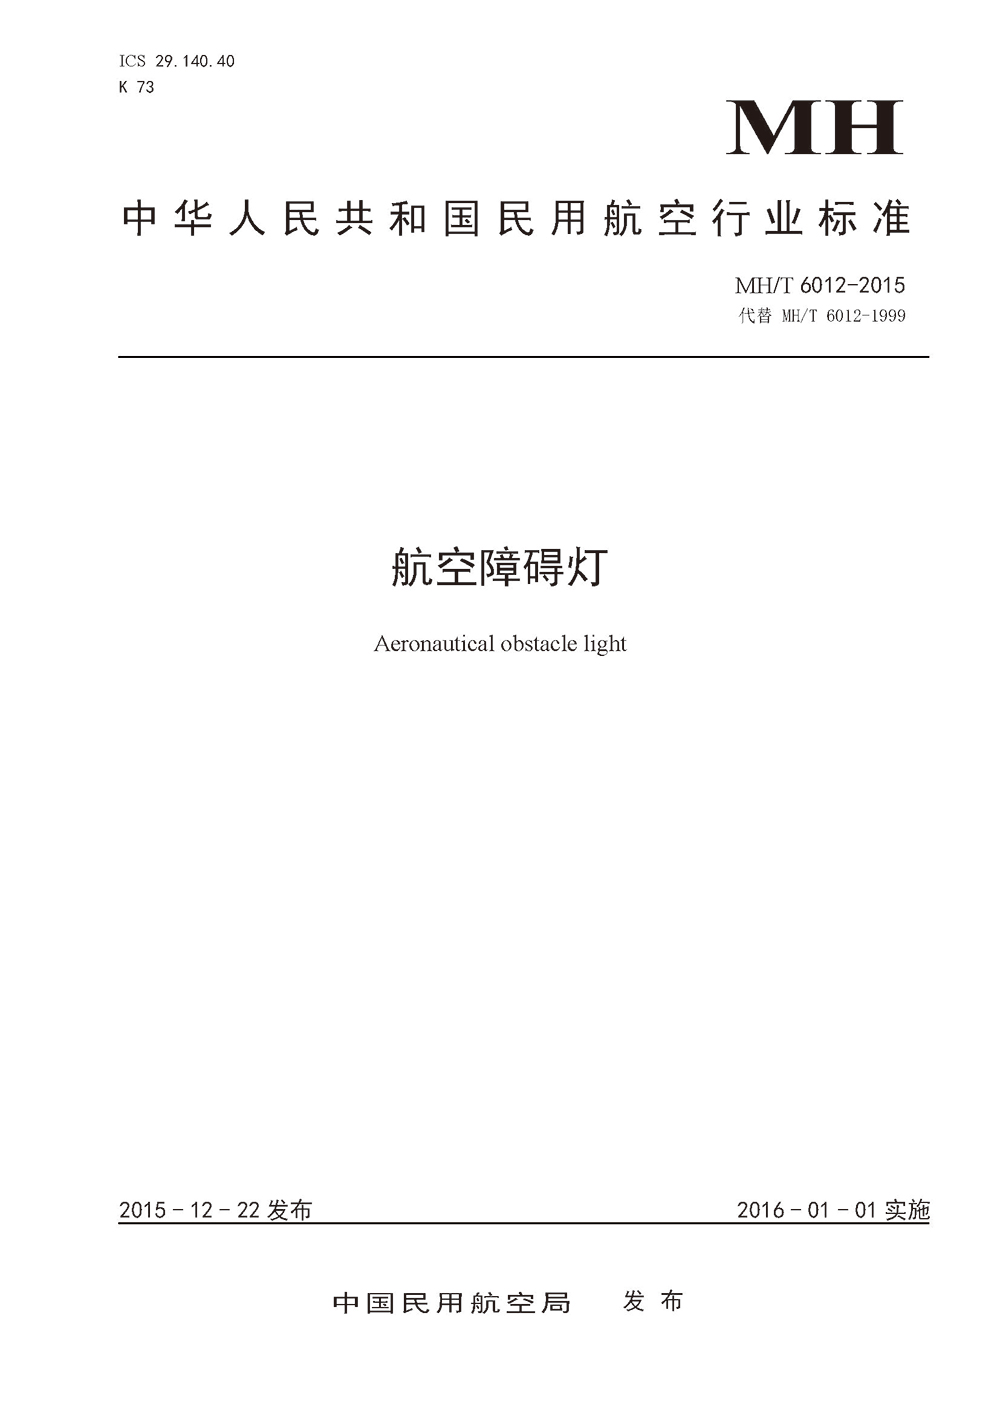 中华人民共和国民用航空行业标准《航空障碍灯》MH/T6012-2015